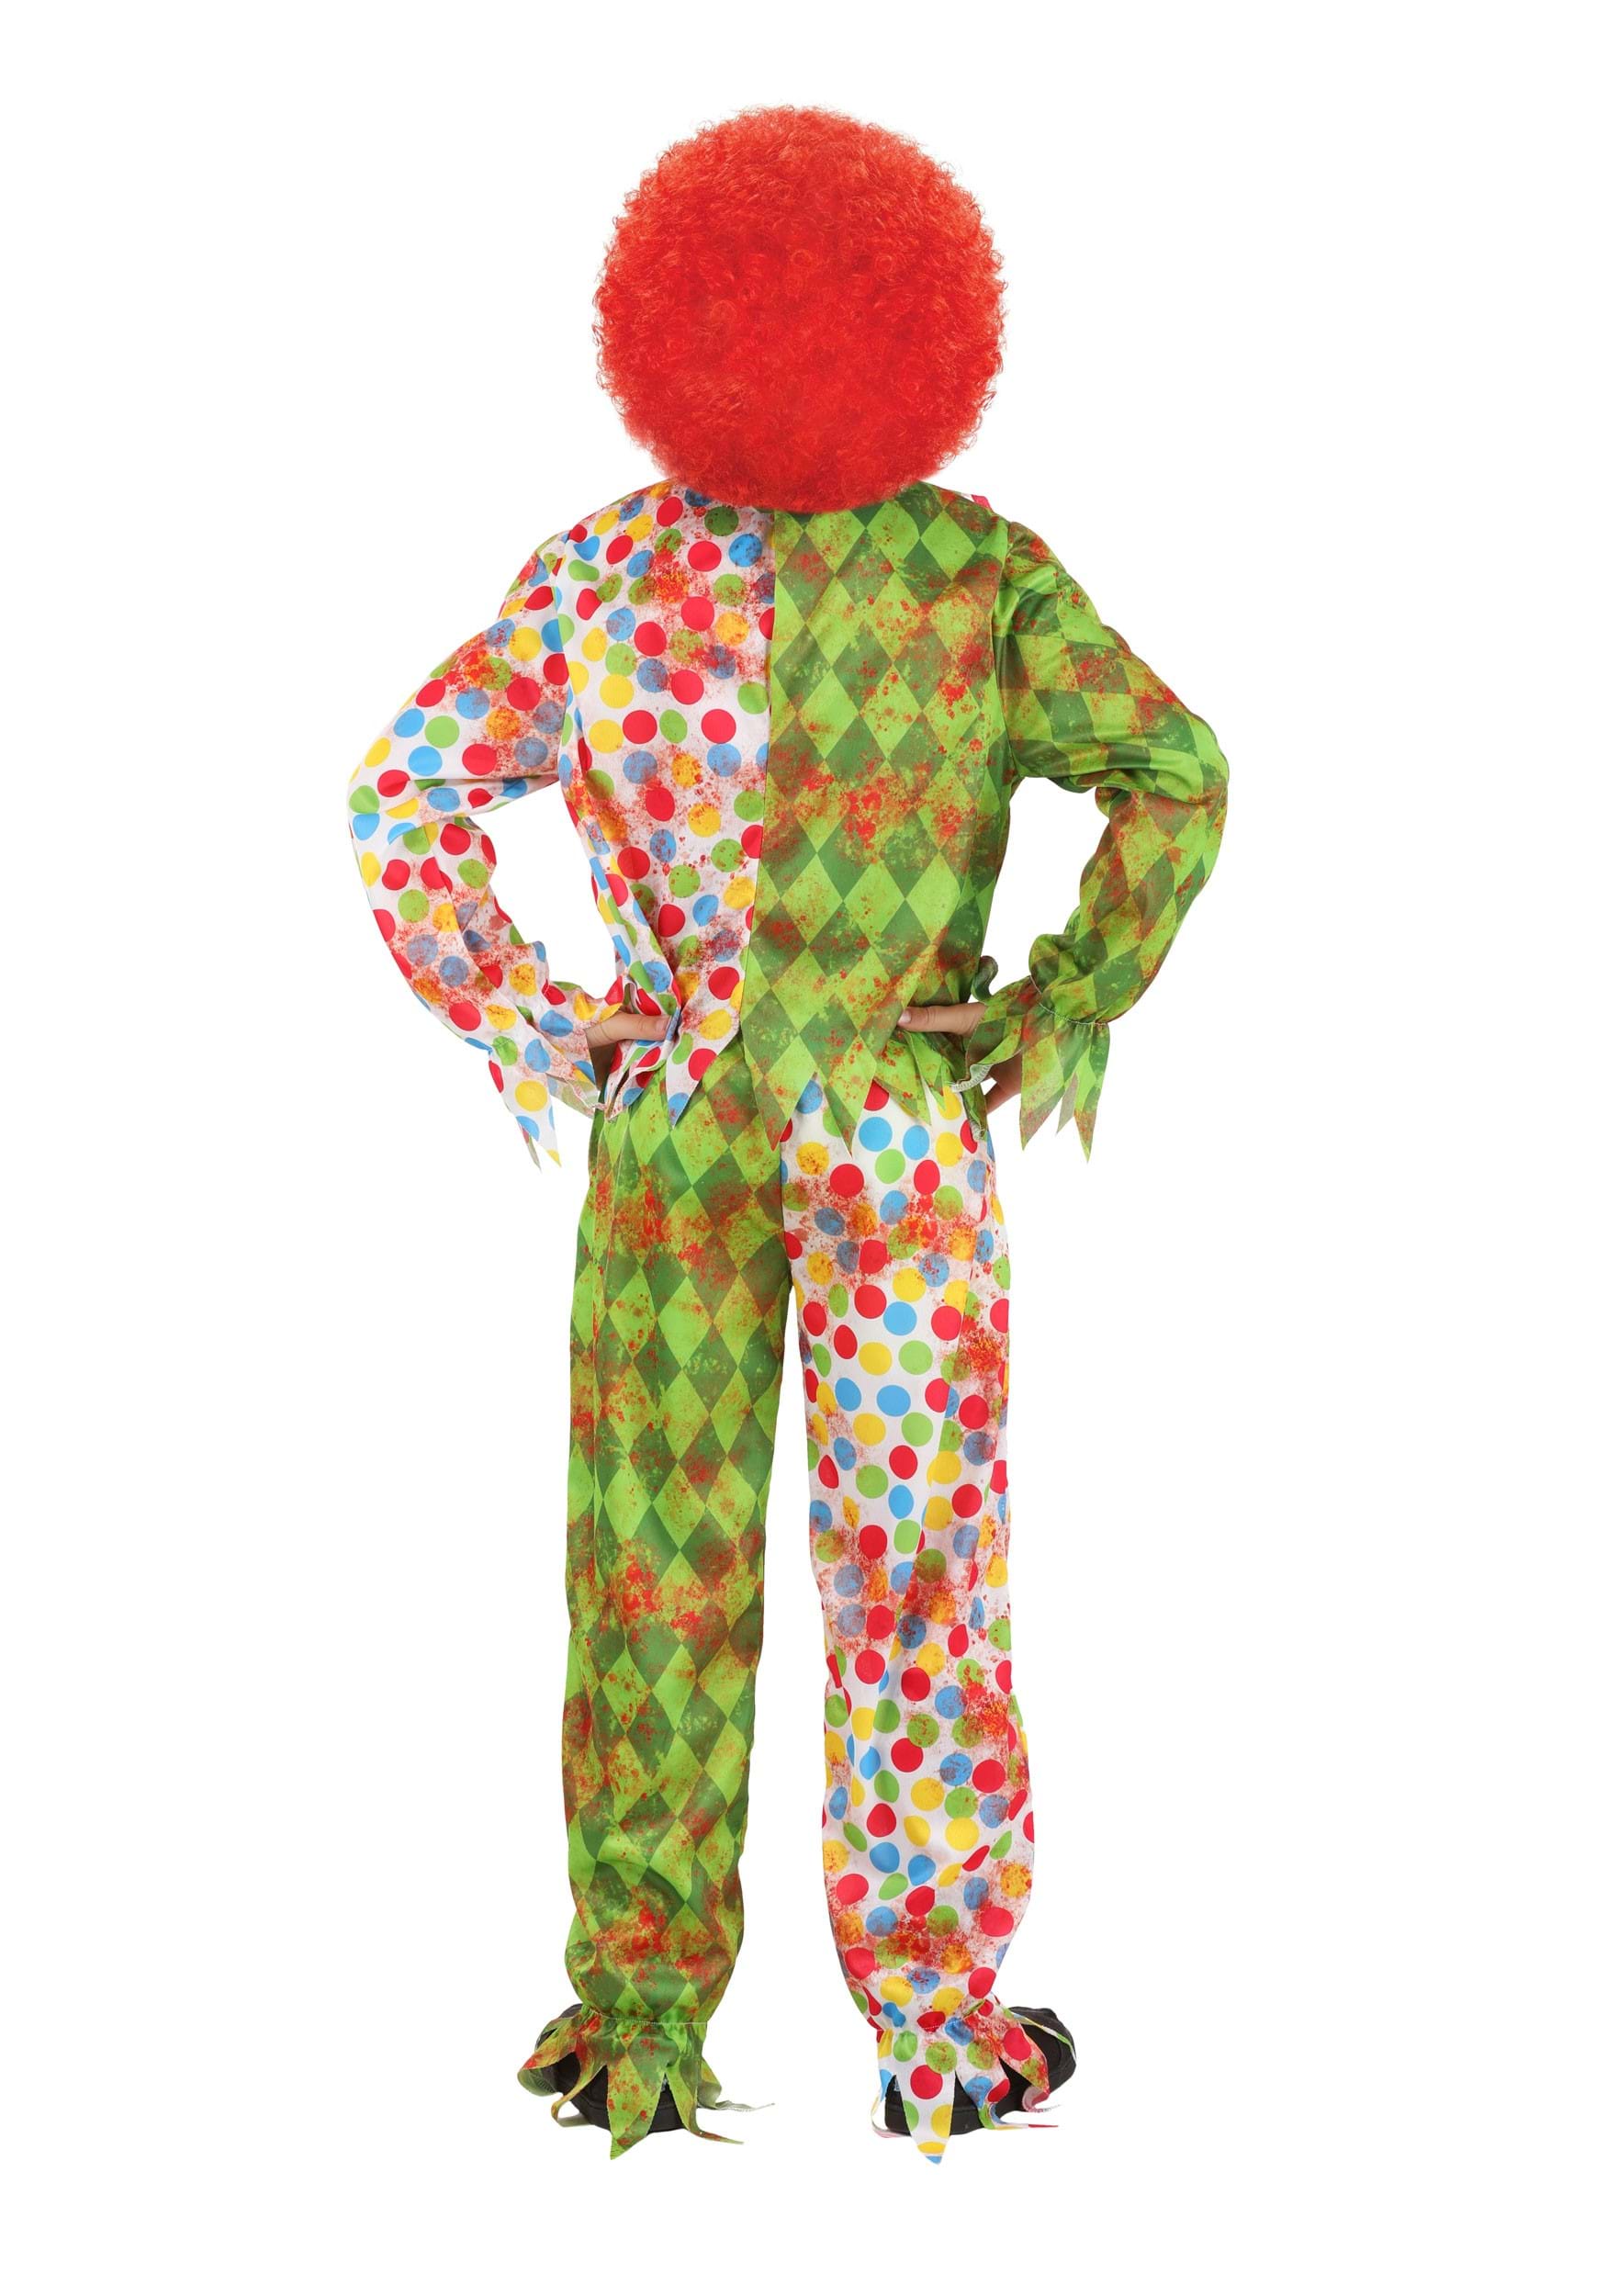 Creepy Masked Clown Kid's Costume